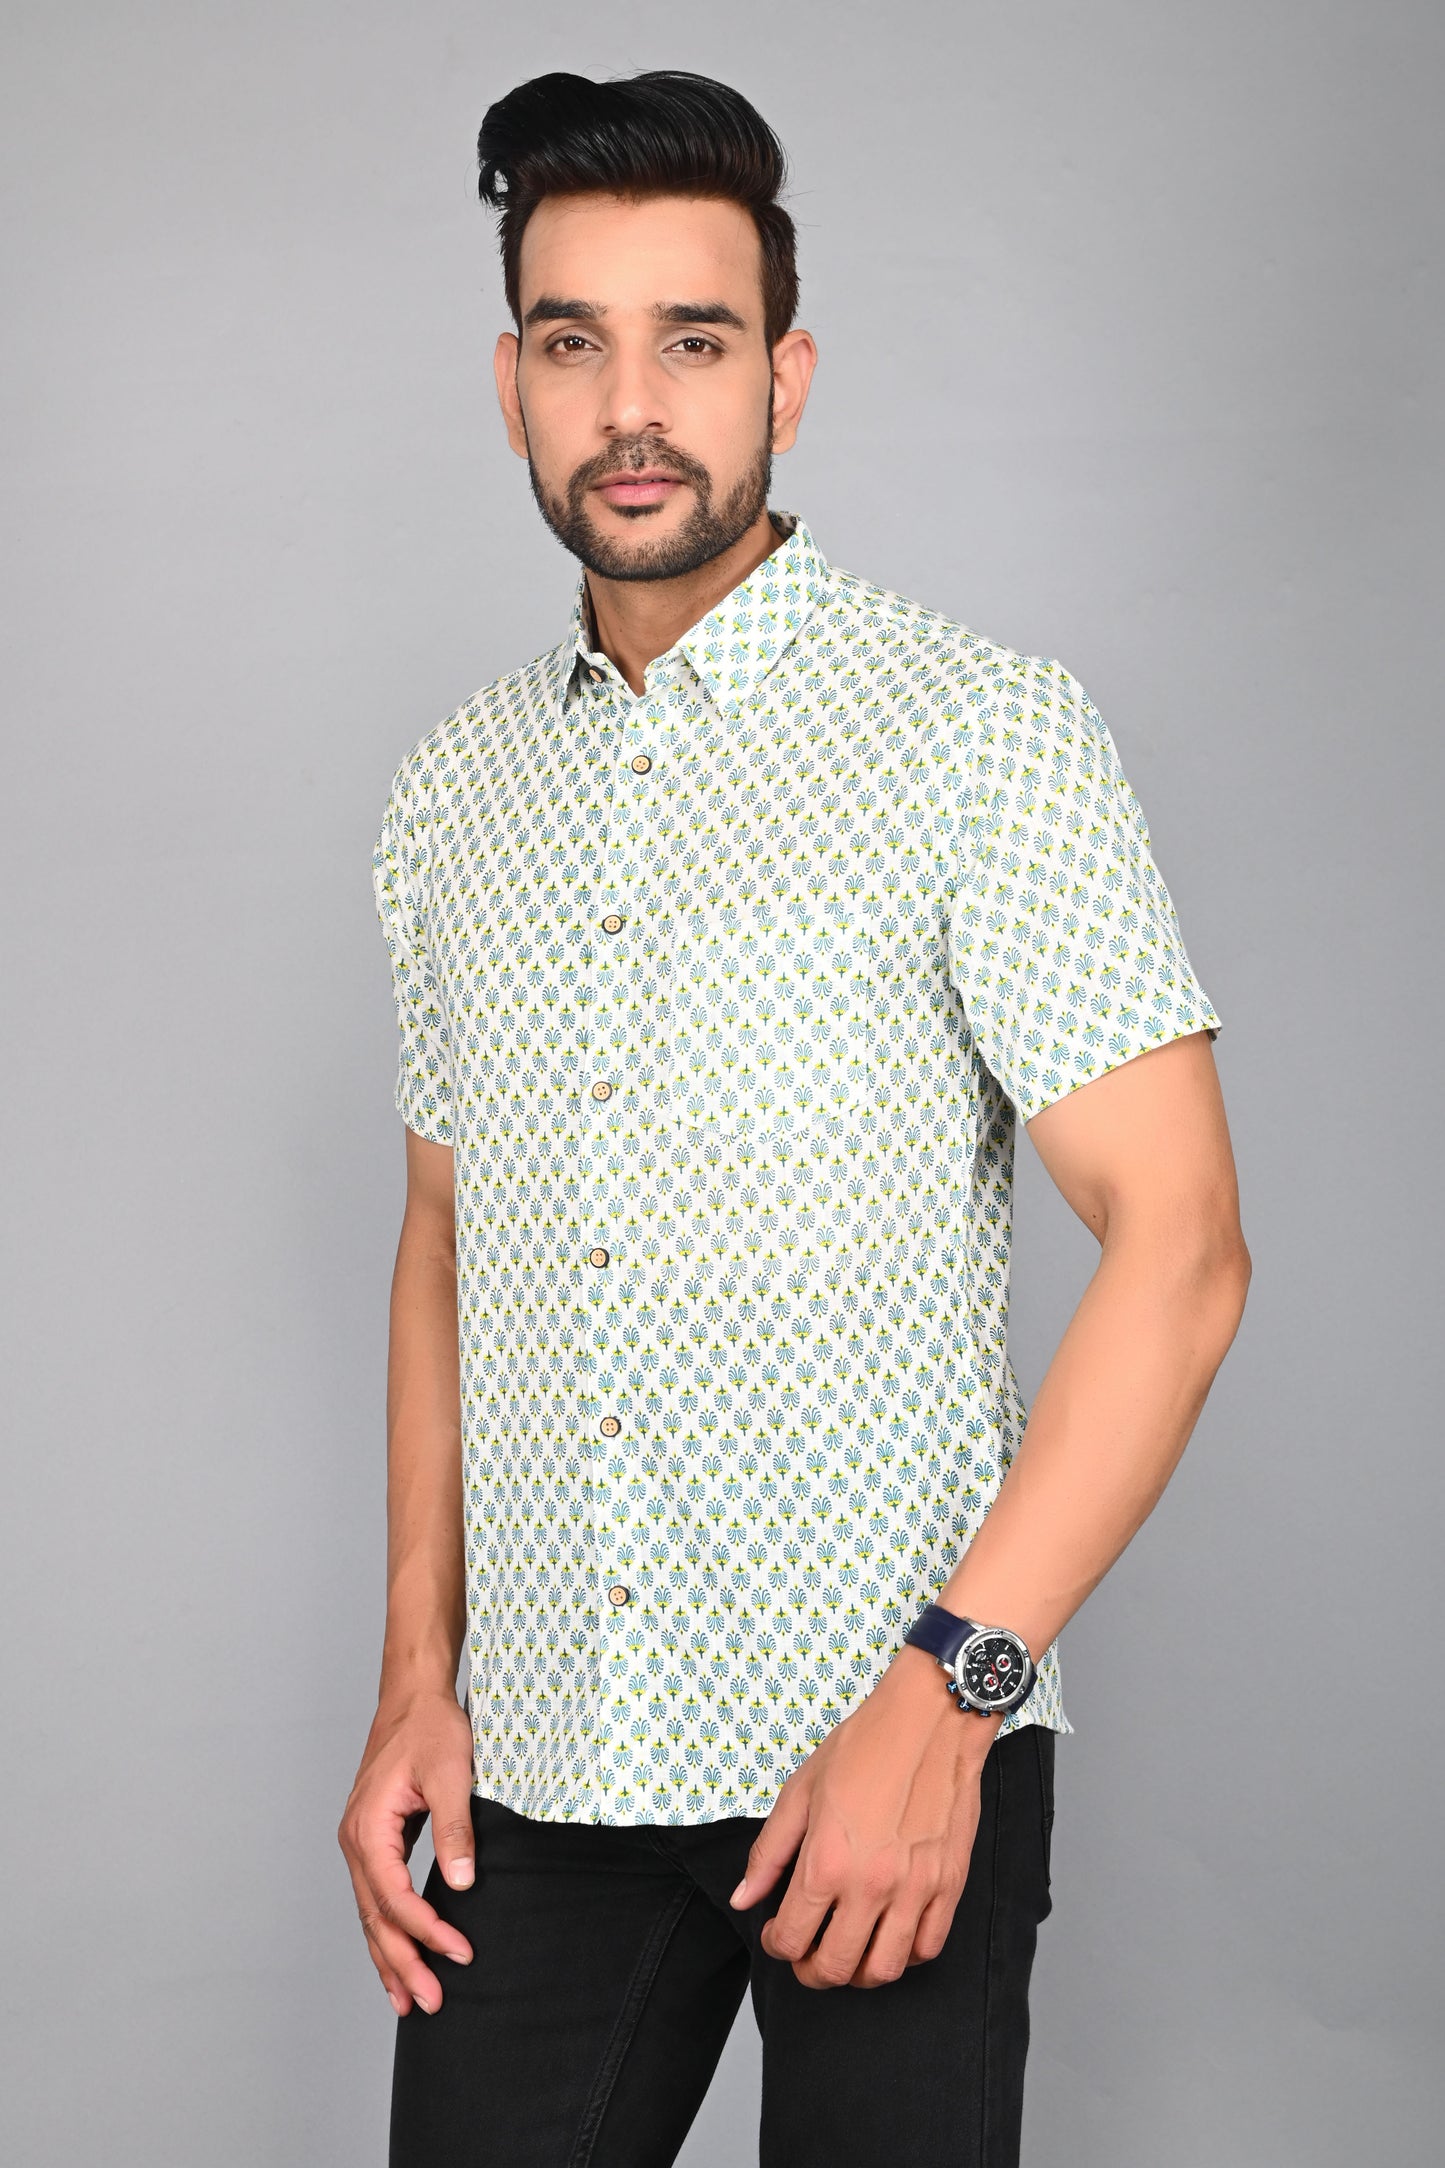 Men's Printed Buti Half-Sleeves shirts